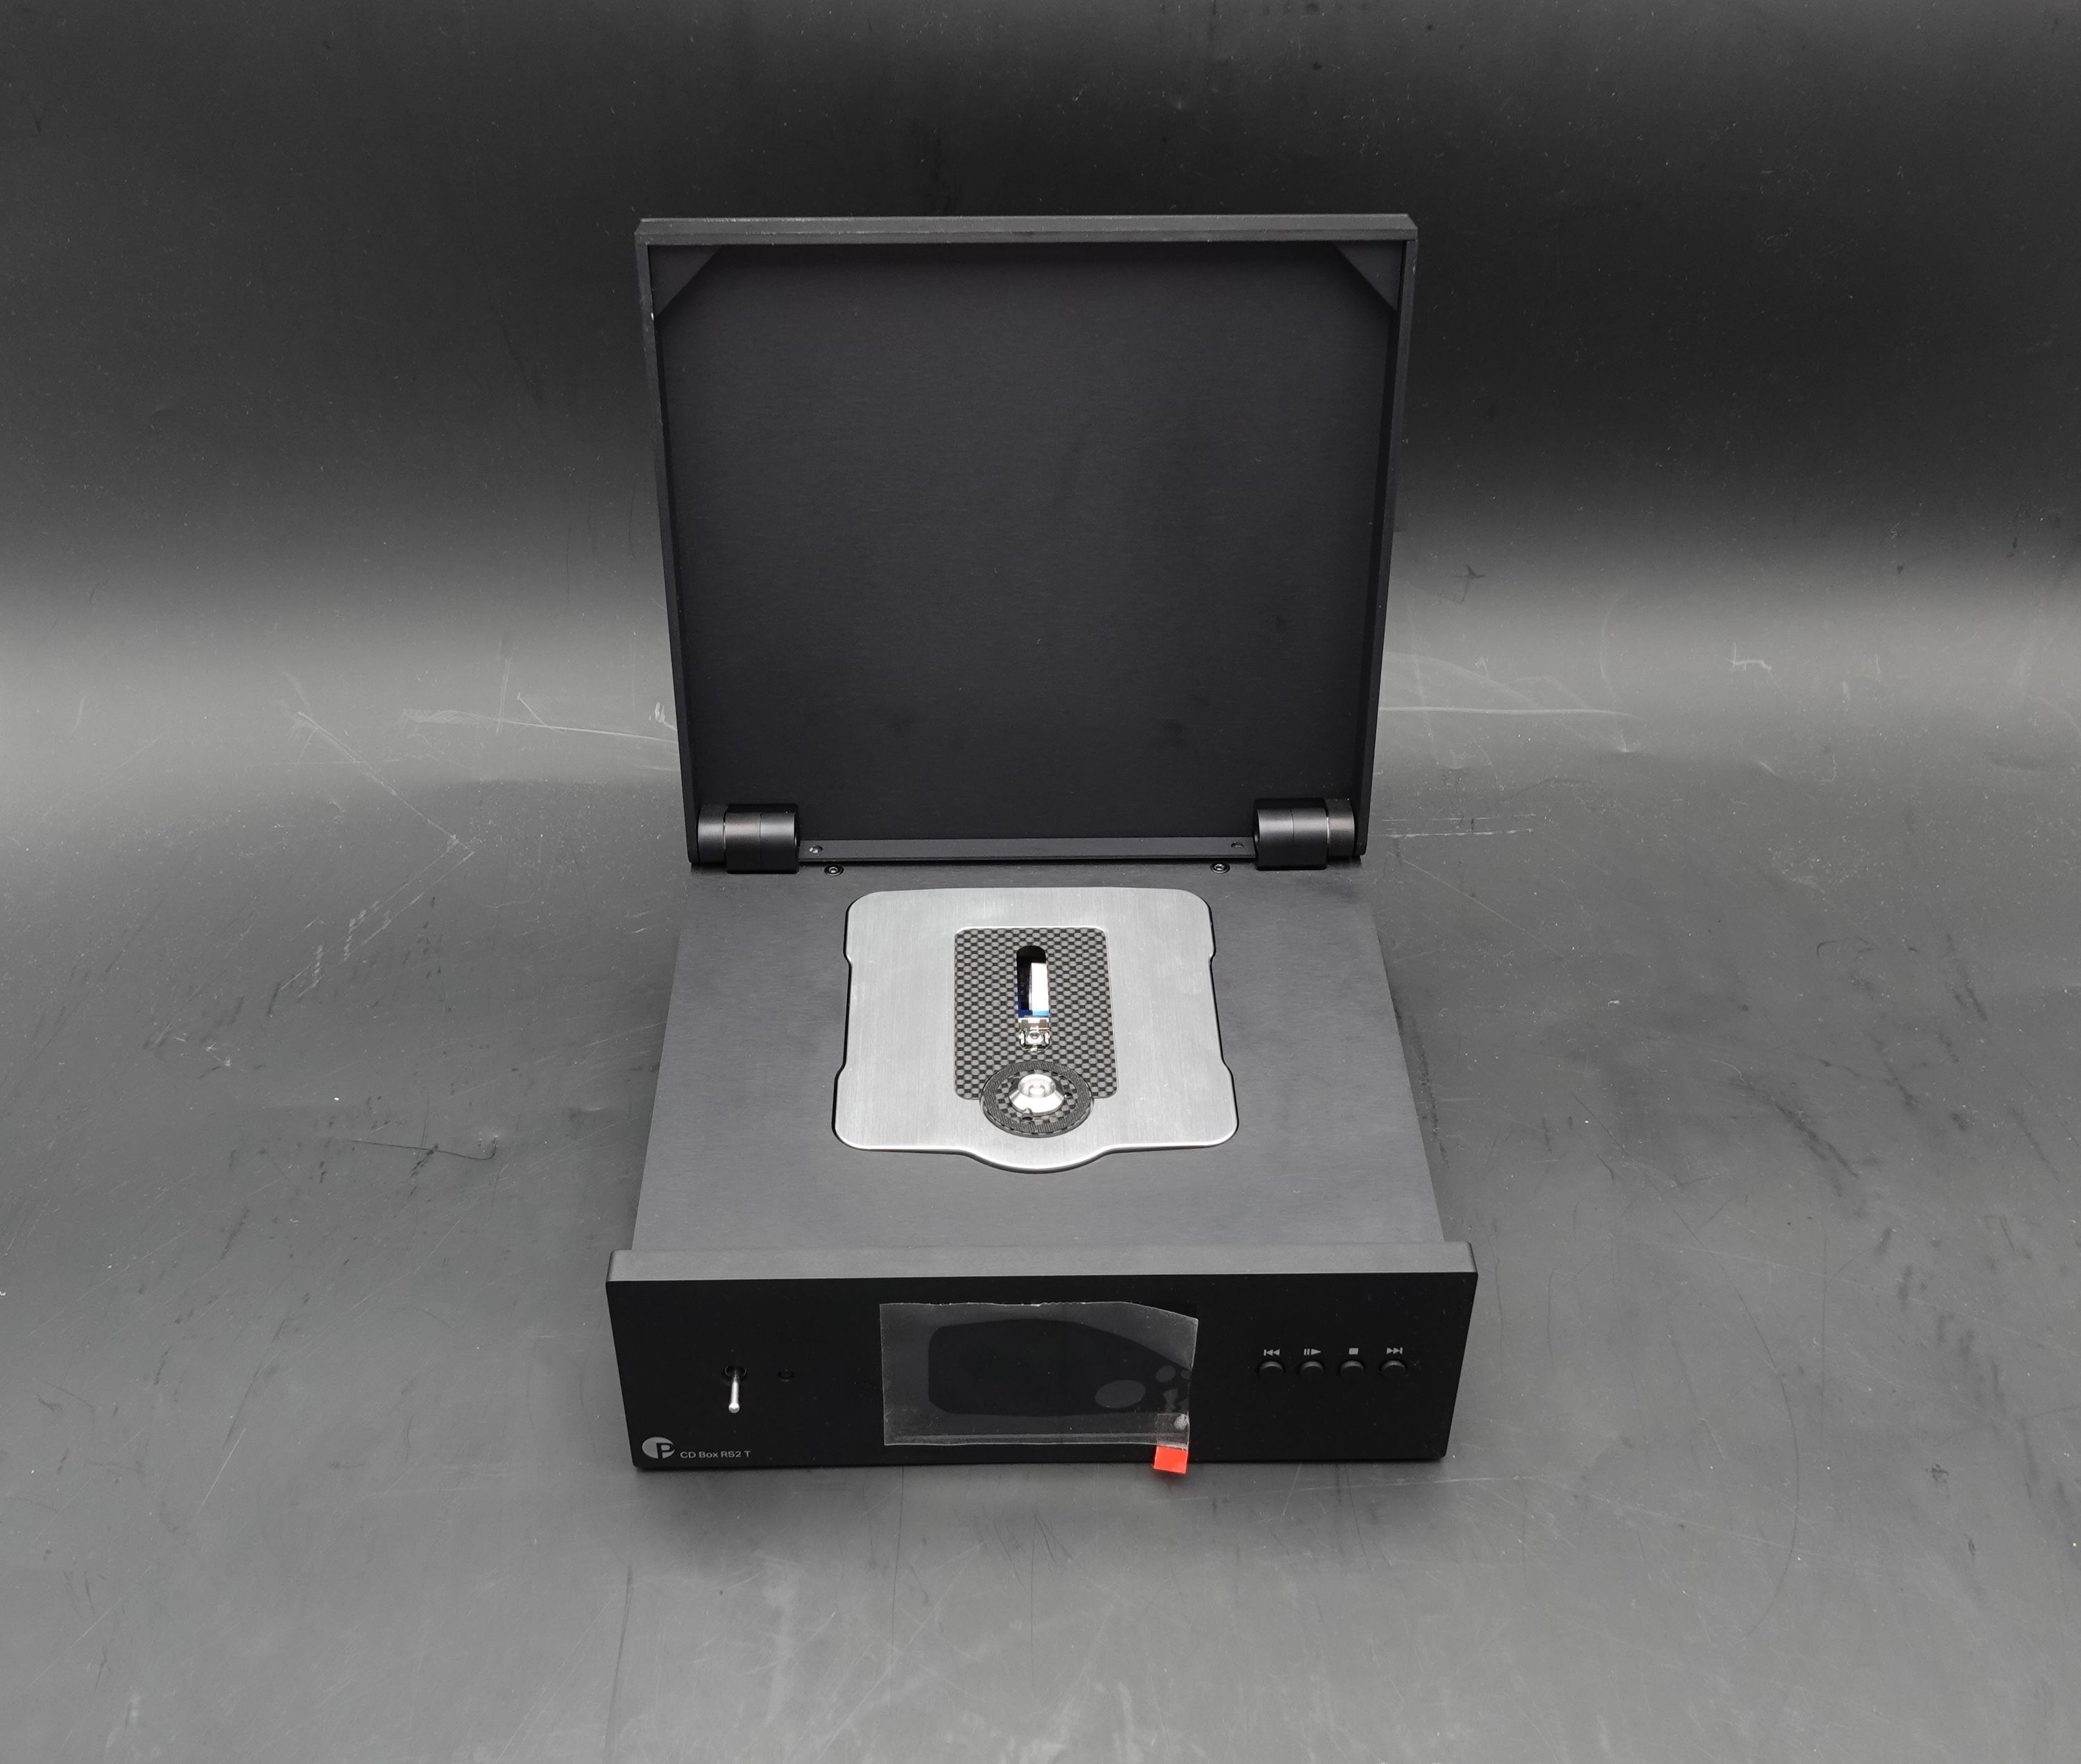 Pro-Ject CD Box RS2 T schwarz Kundenrückläufer